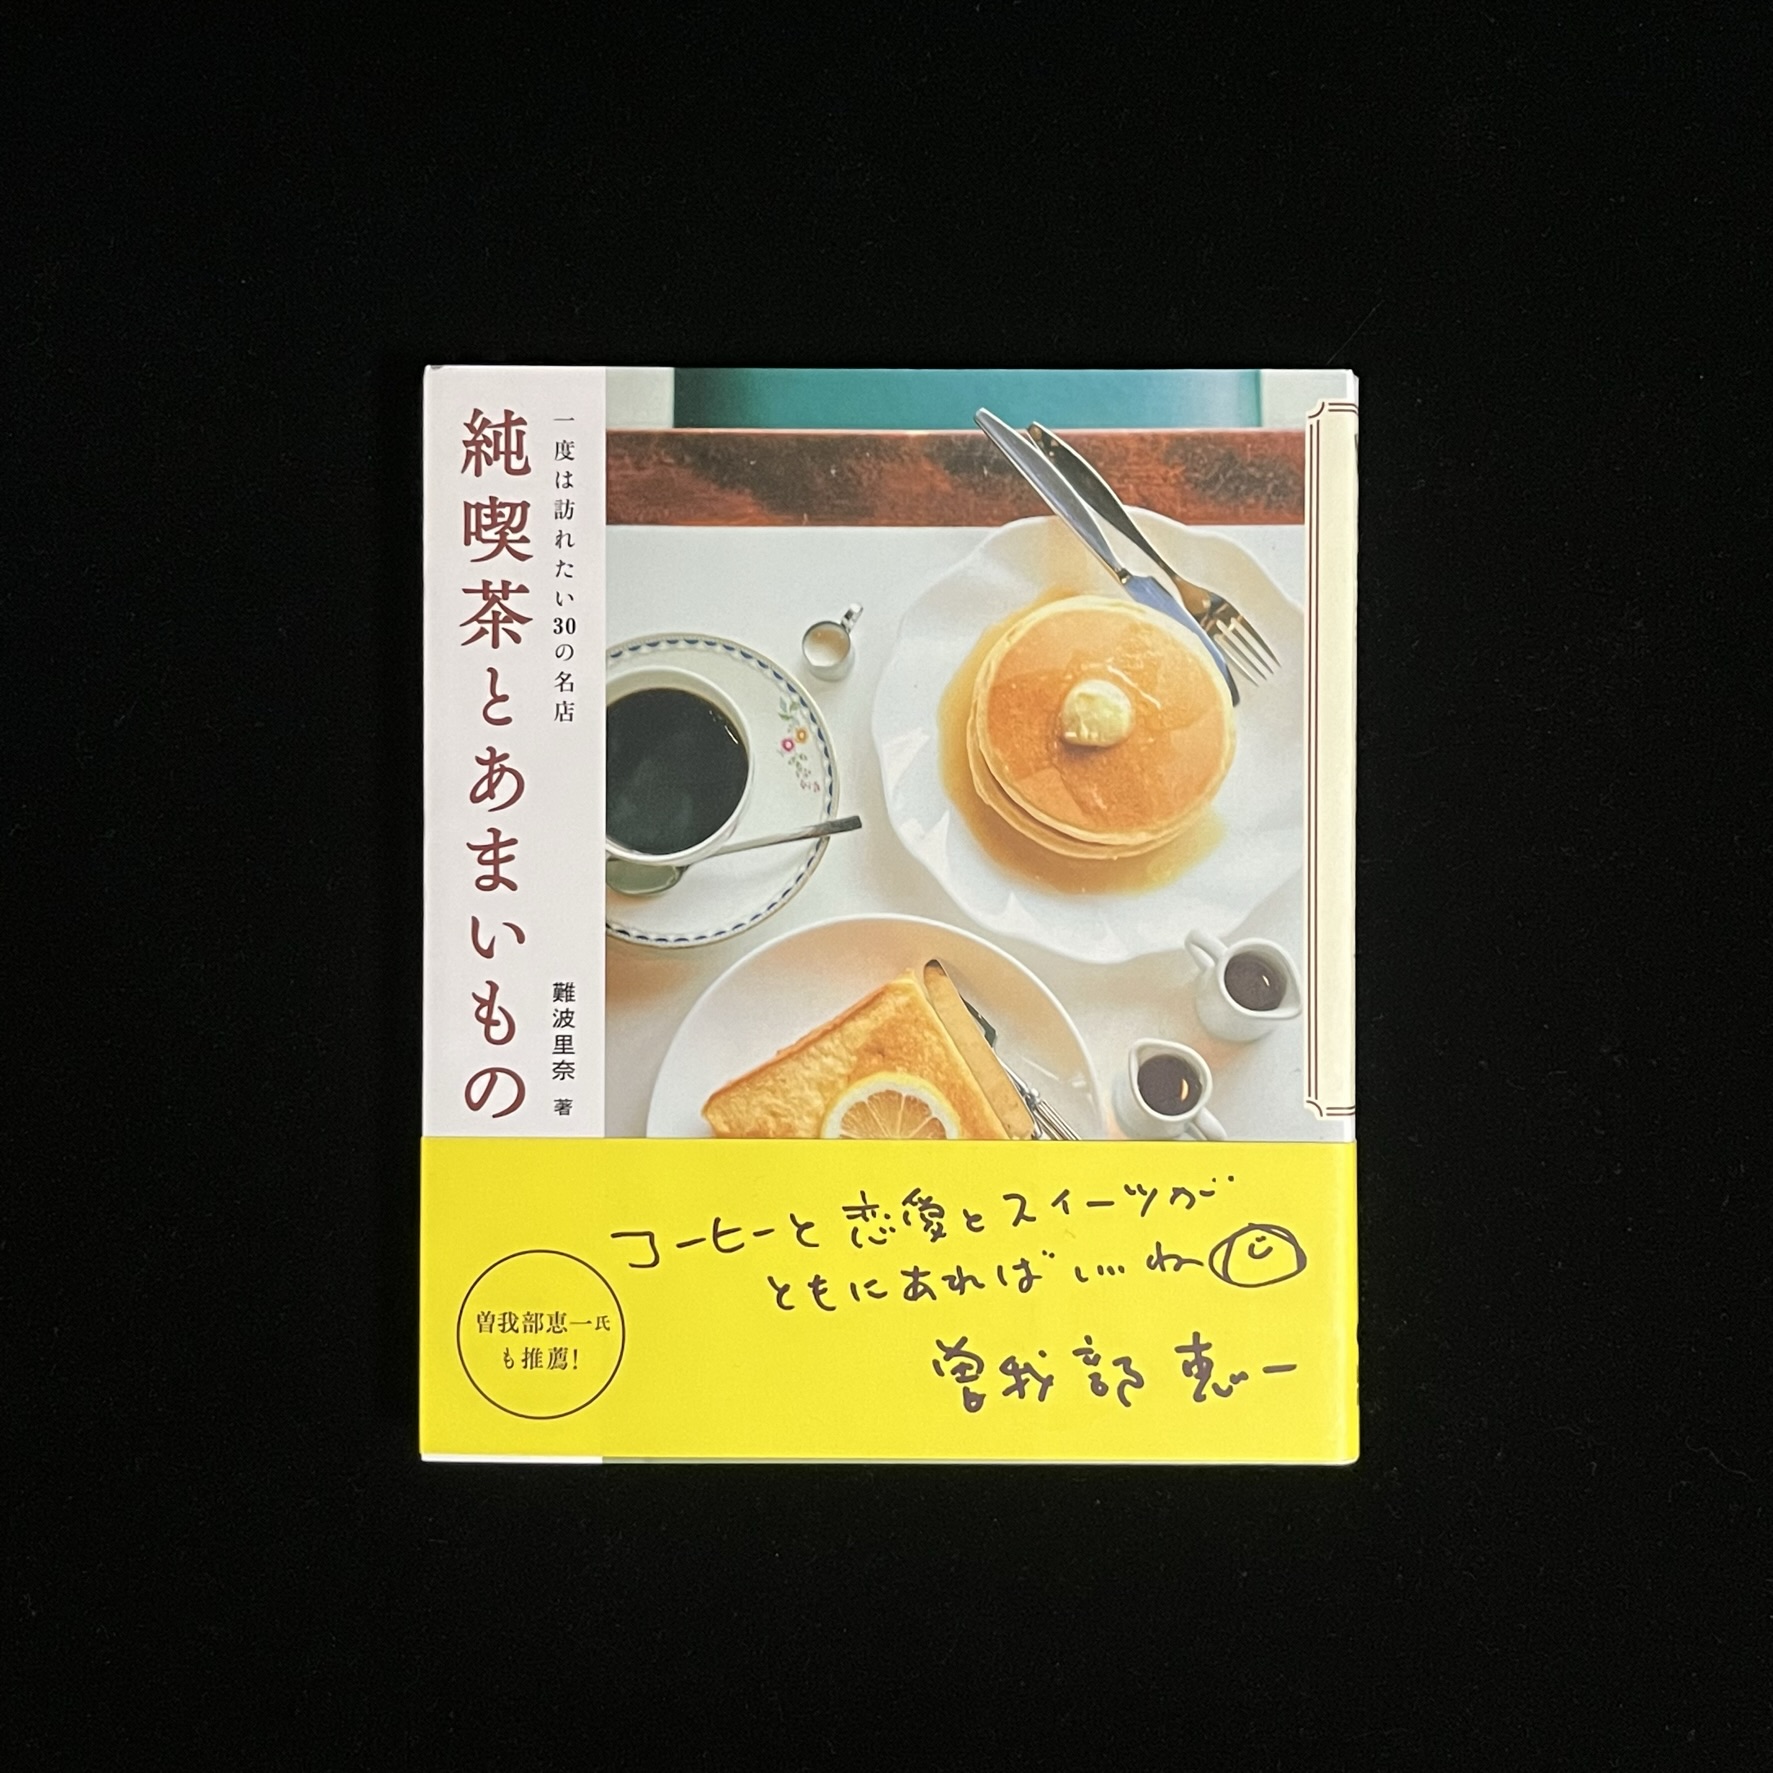 『純喫茶とあまいもの』の表紙の写真。食卓の上にホットケーキにトースト、コーヒーが